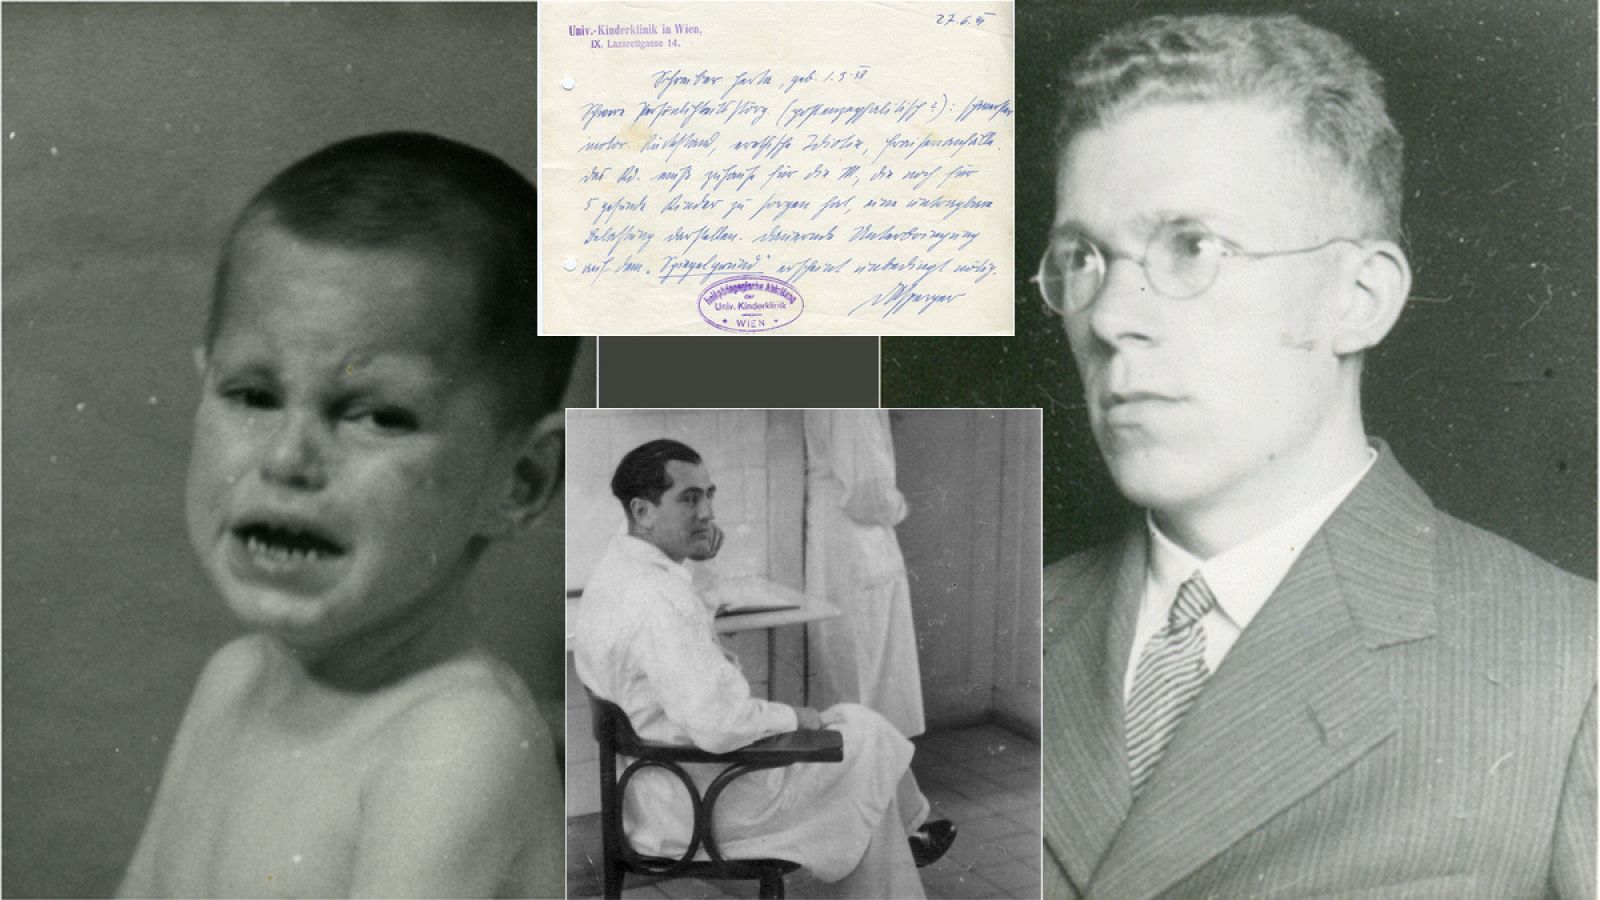 El doctor Asperger cooperó con el regimen nazi